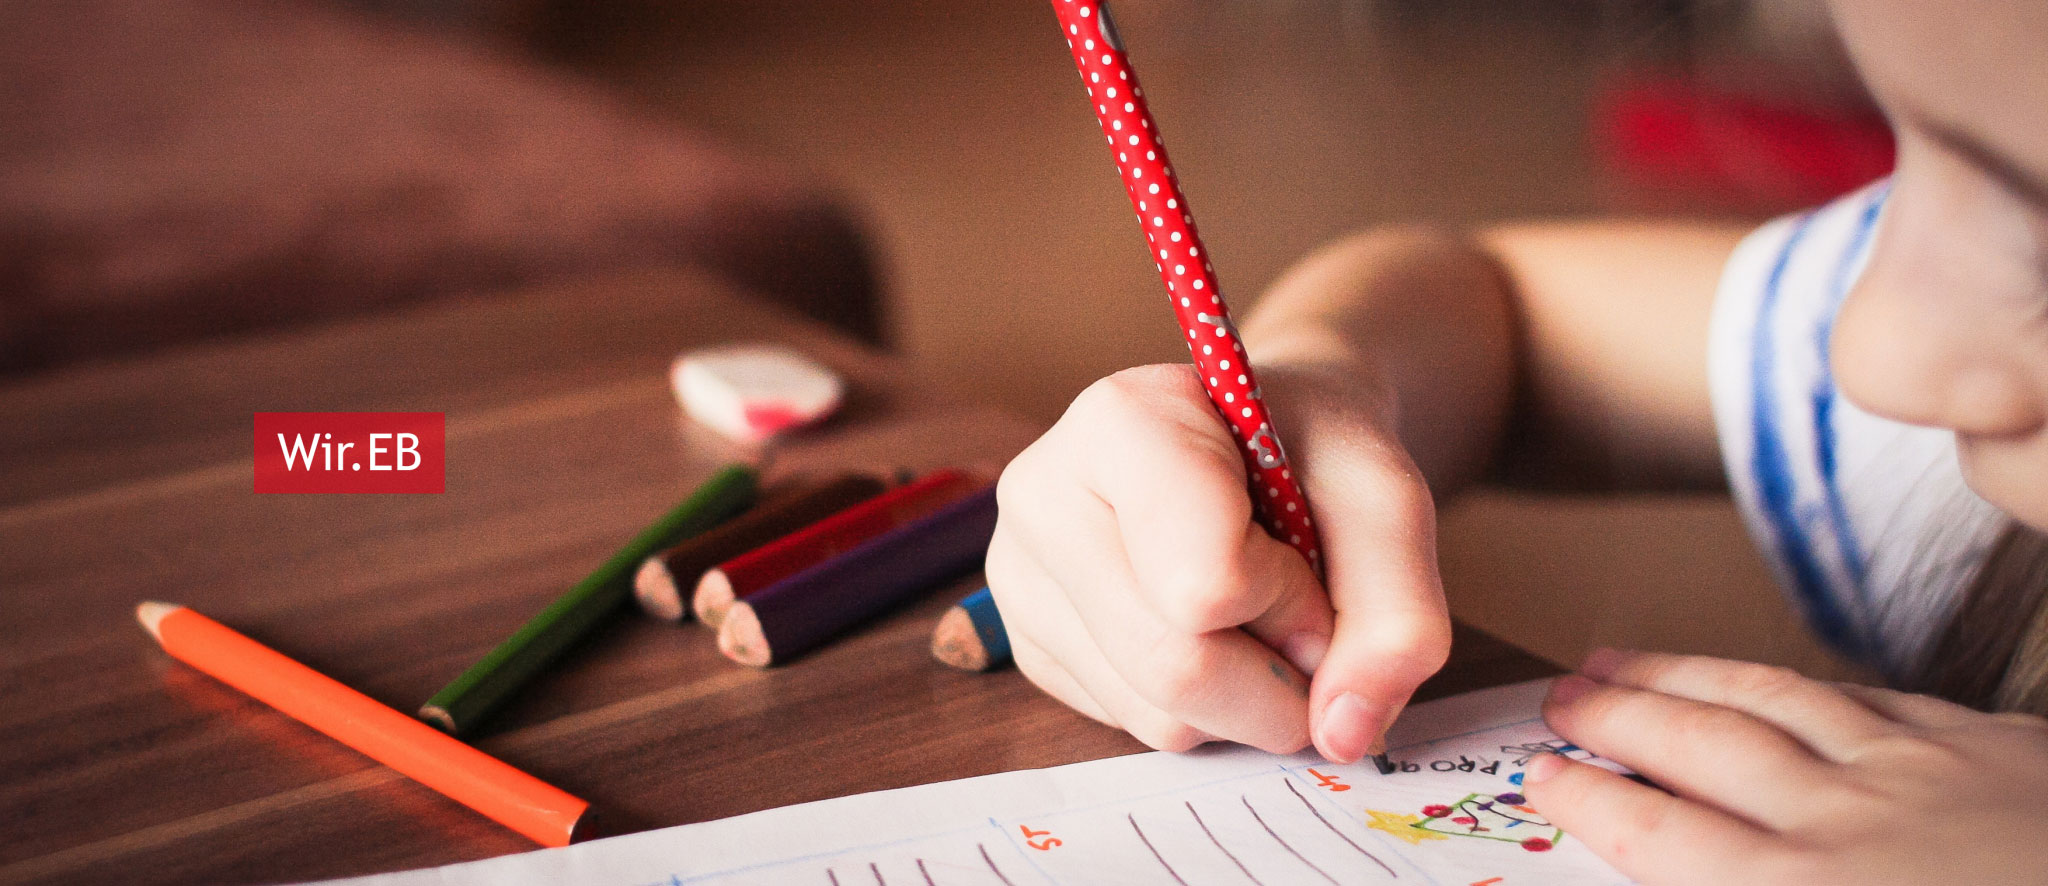 Kind malt mit Stiften auf Papier